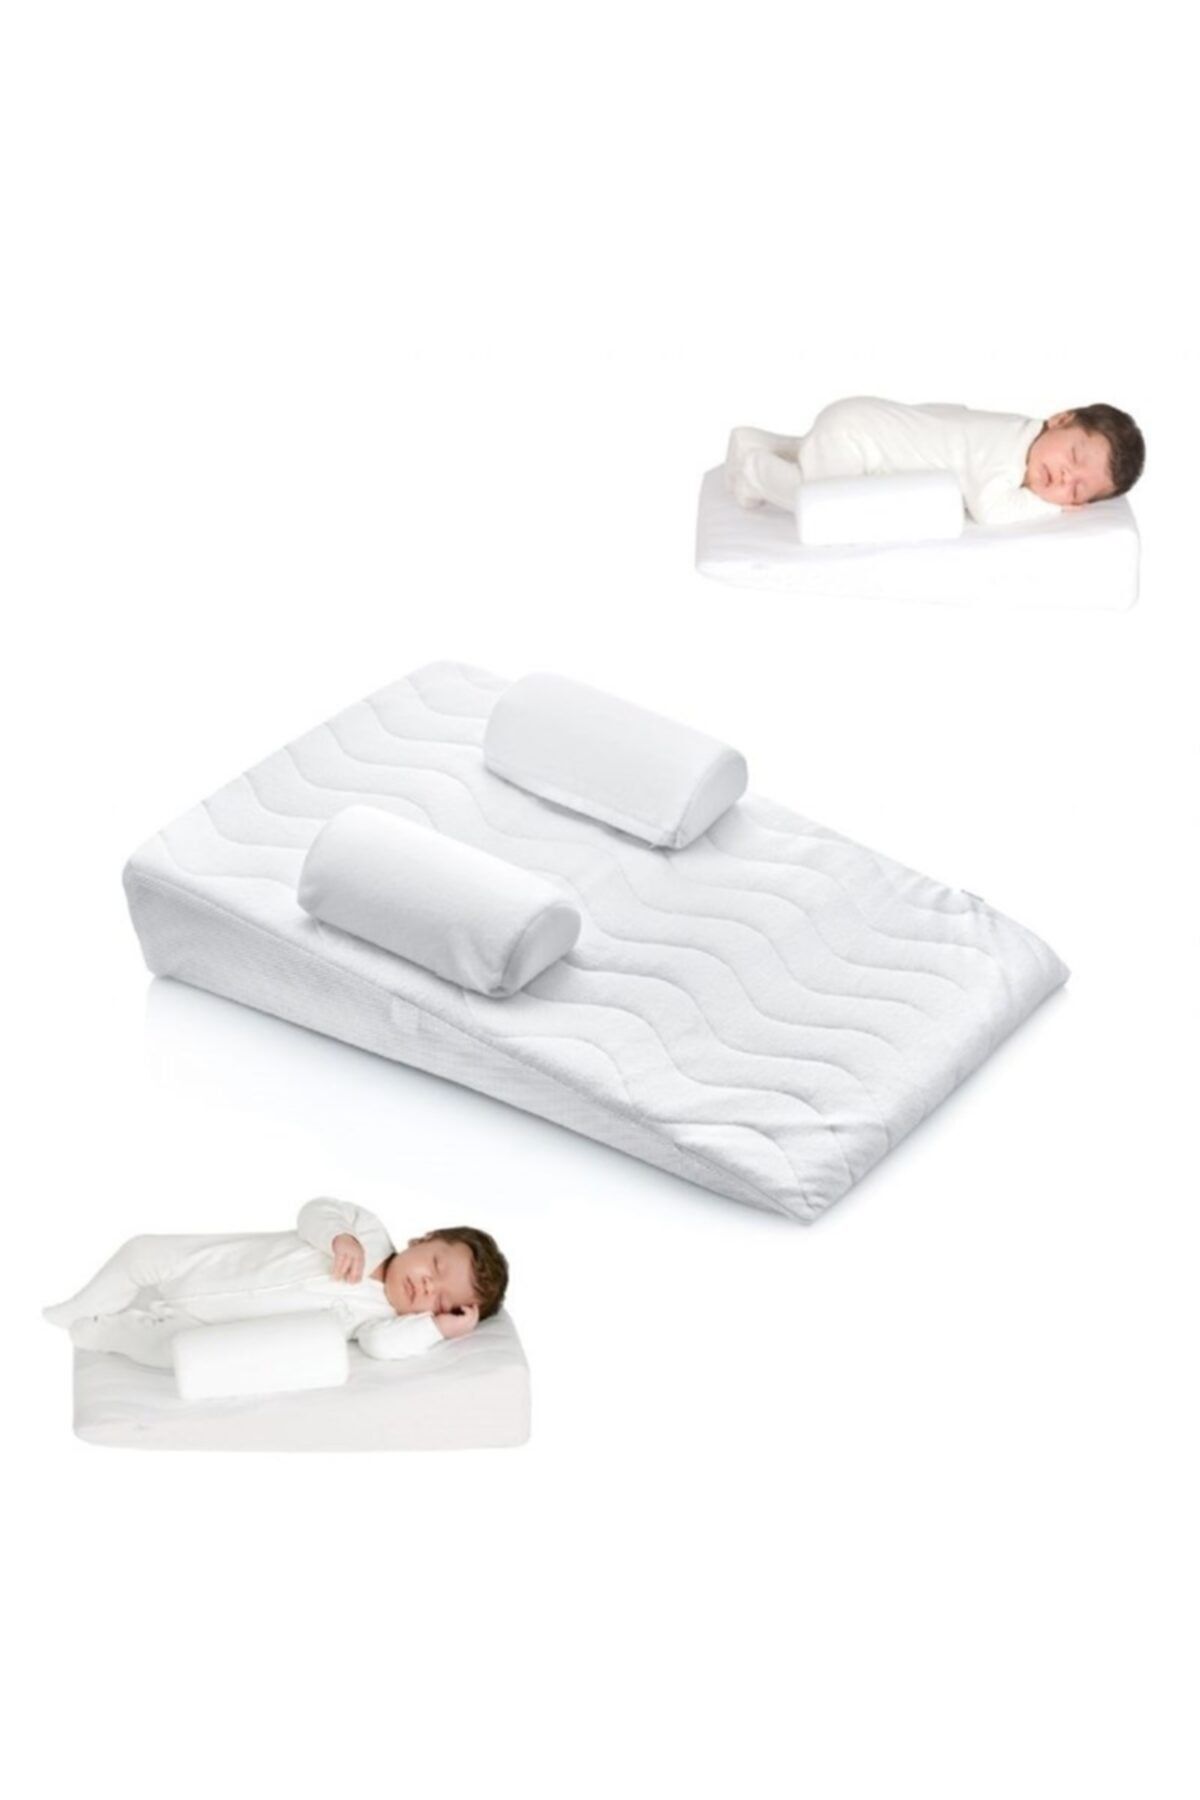 Genel Markalar Bebek Reflü Yatağı Fermuarlı Kılıf 65x40 Cm